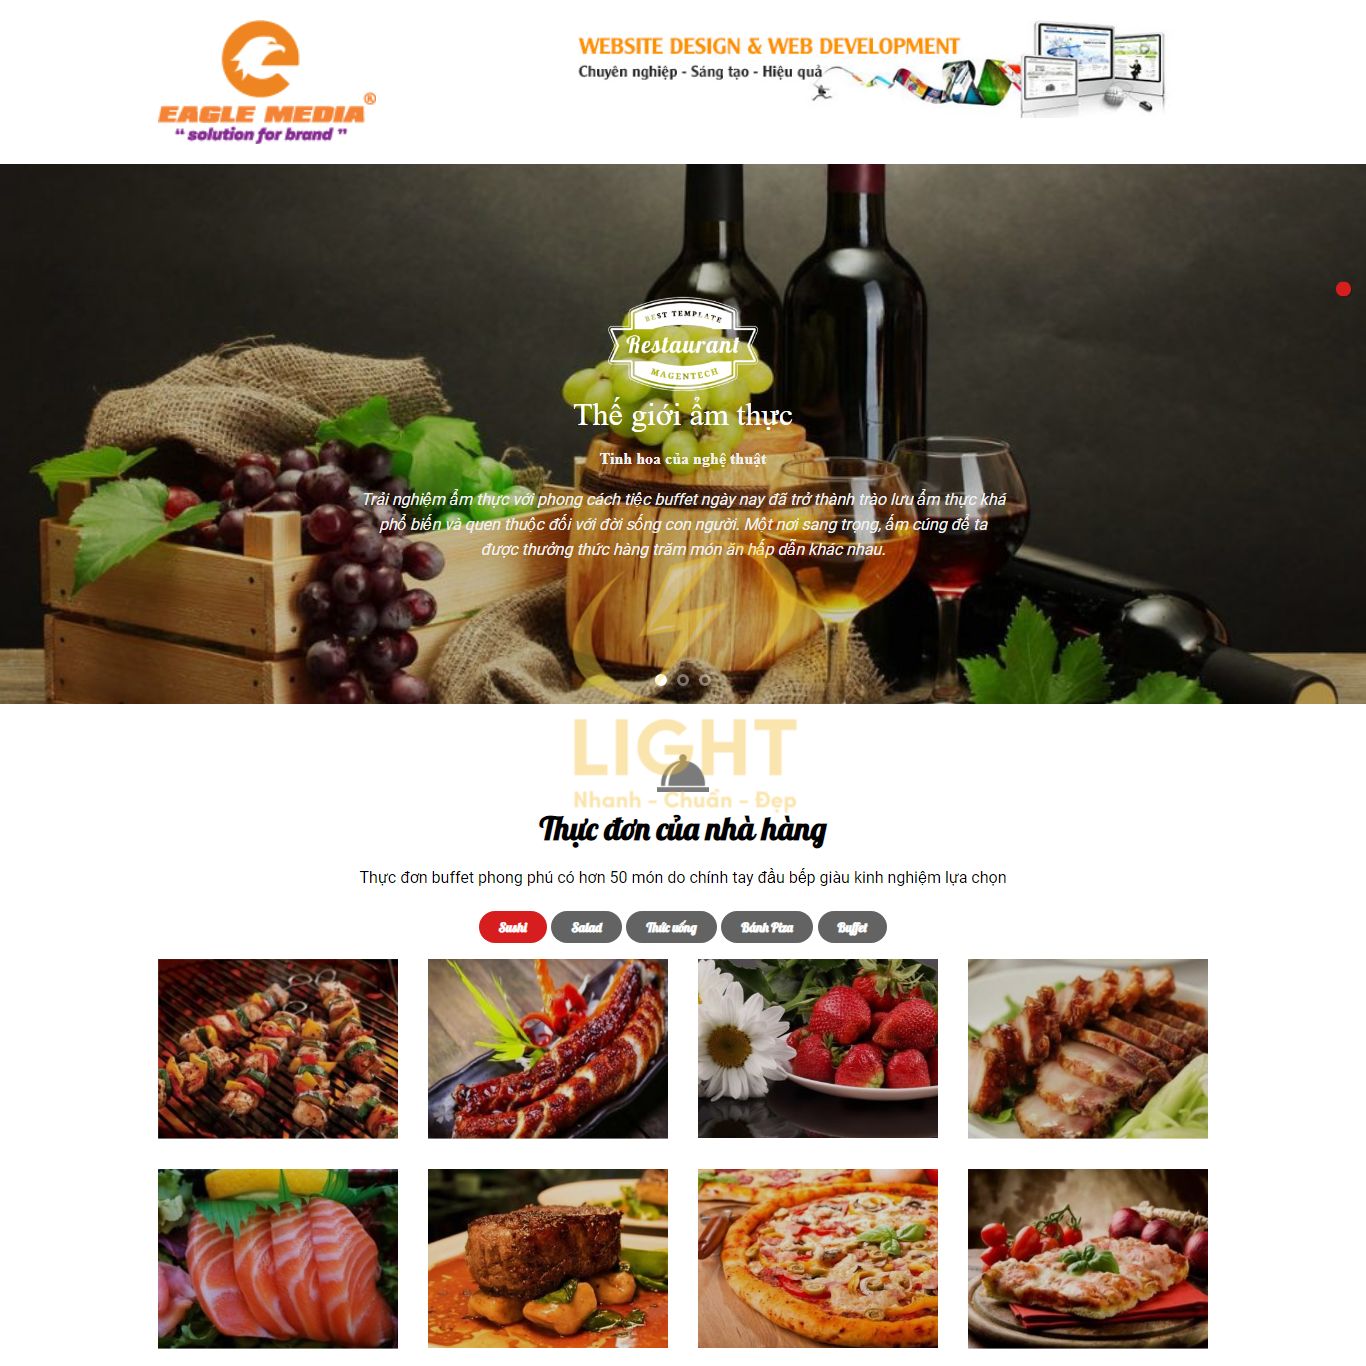 Thực đơn được đưa trên Landing Page cho sản phẩm thực phẩm của nhà hàng